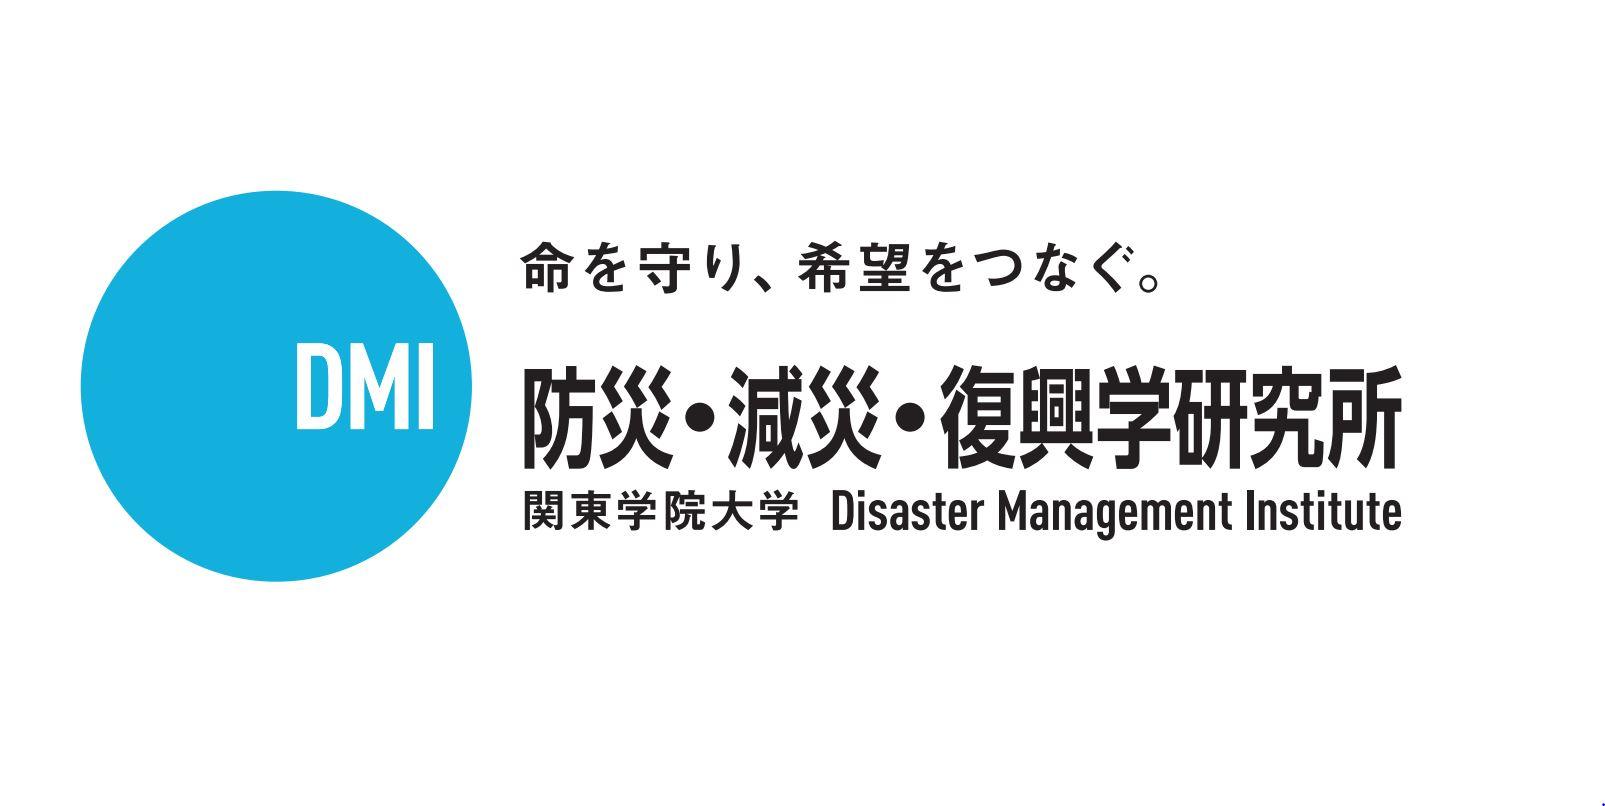 関東学院大学と県立広島大学が防災分野における学術及び産業の発展と人材の育成に向けて連携協定を締結